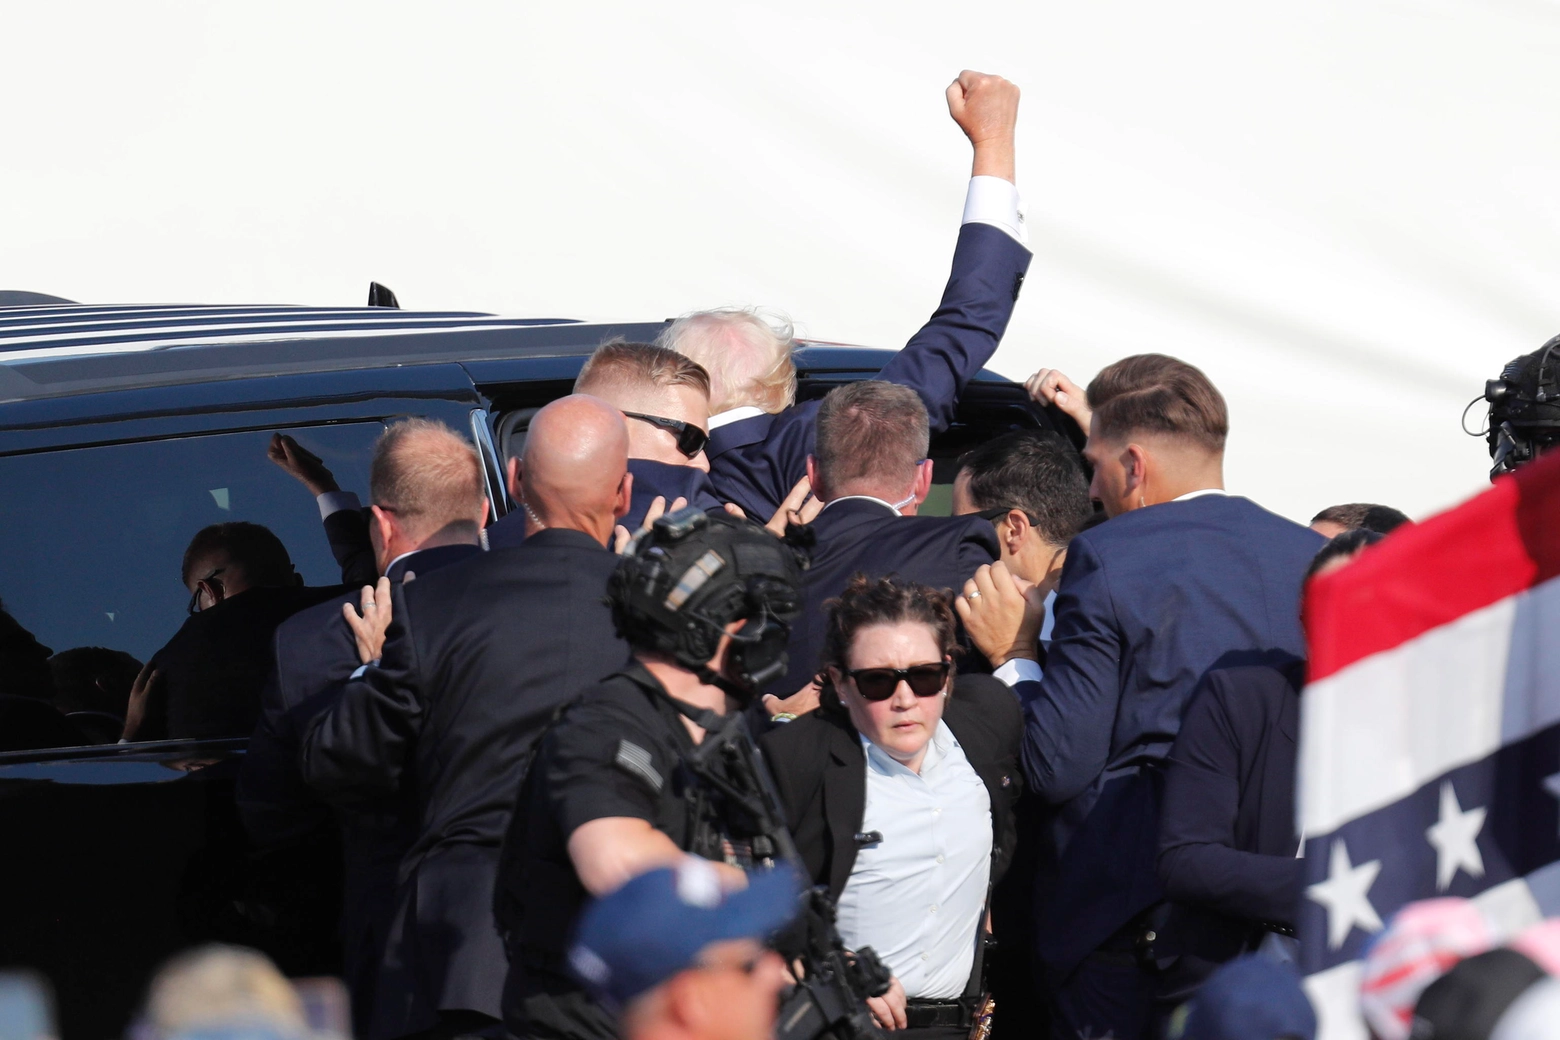 Il presidente Trump, col pugno alzato subito dopo essere stato ferito, viene caricato in un'auto blindata dai servizi di sicurezza